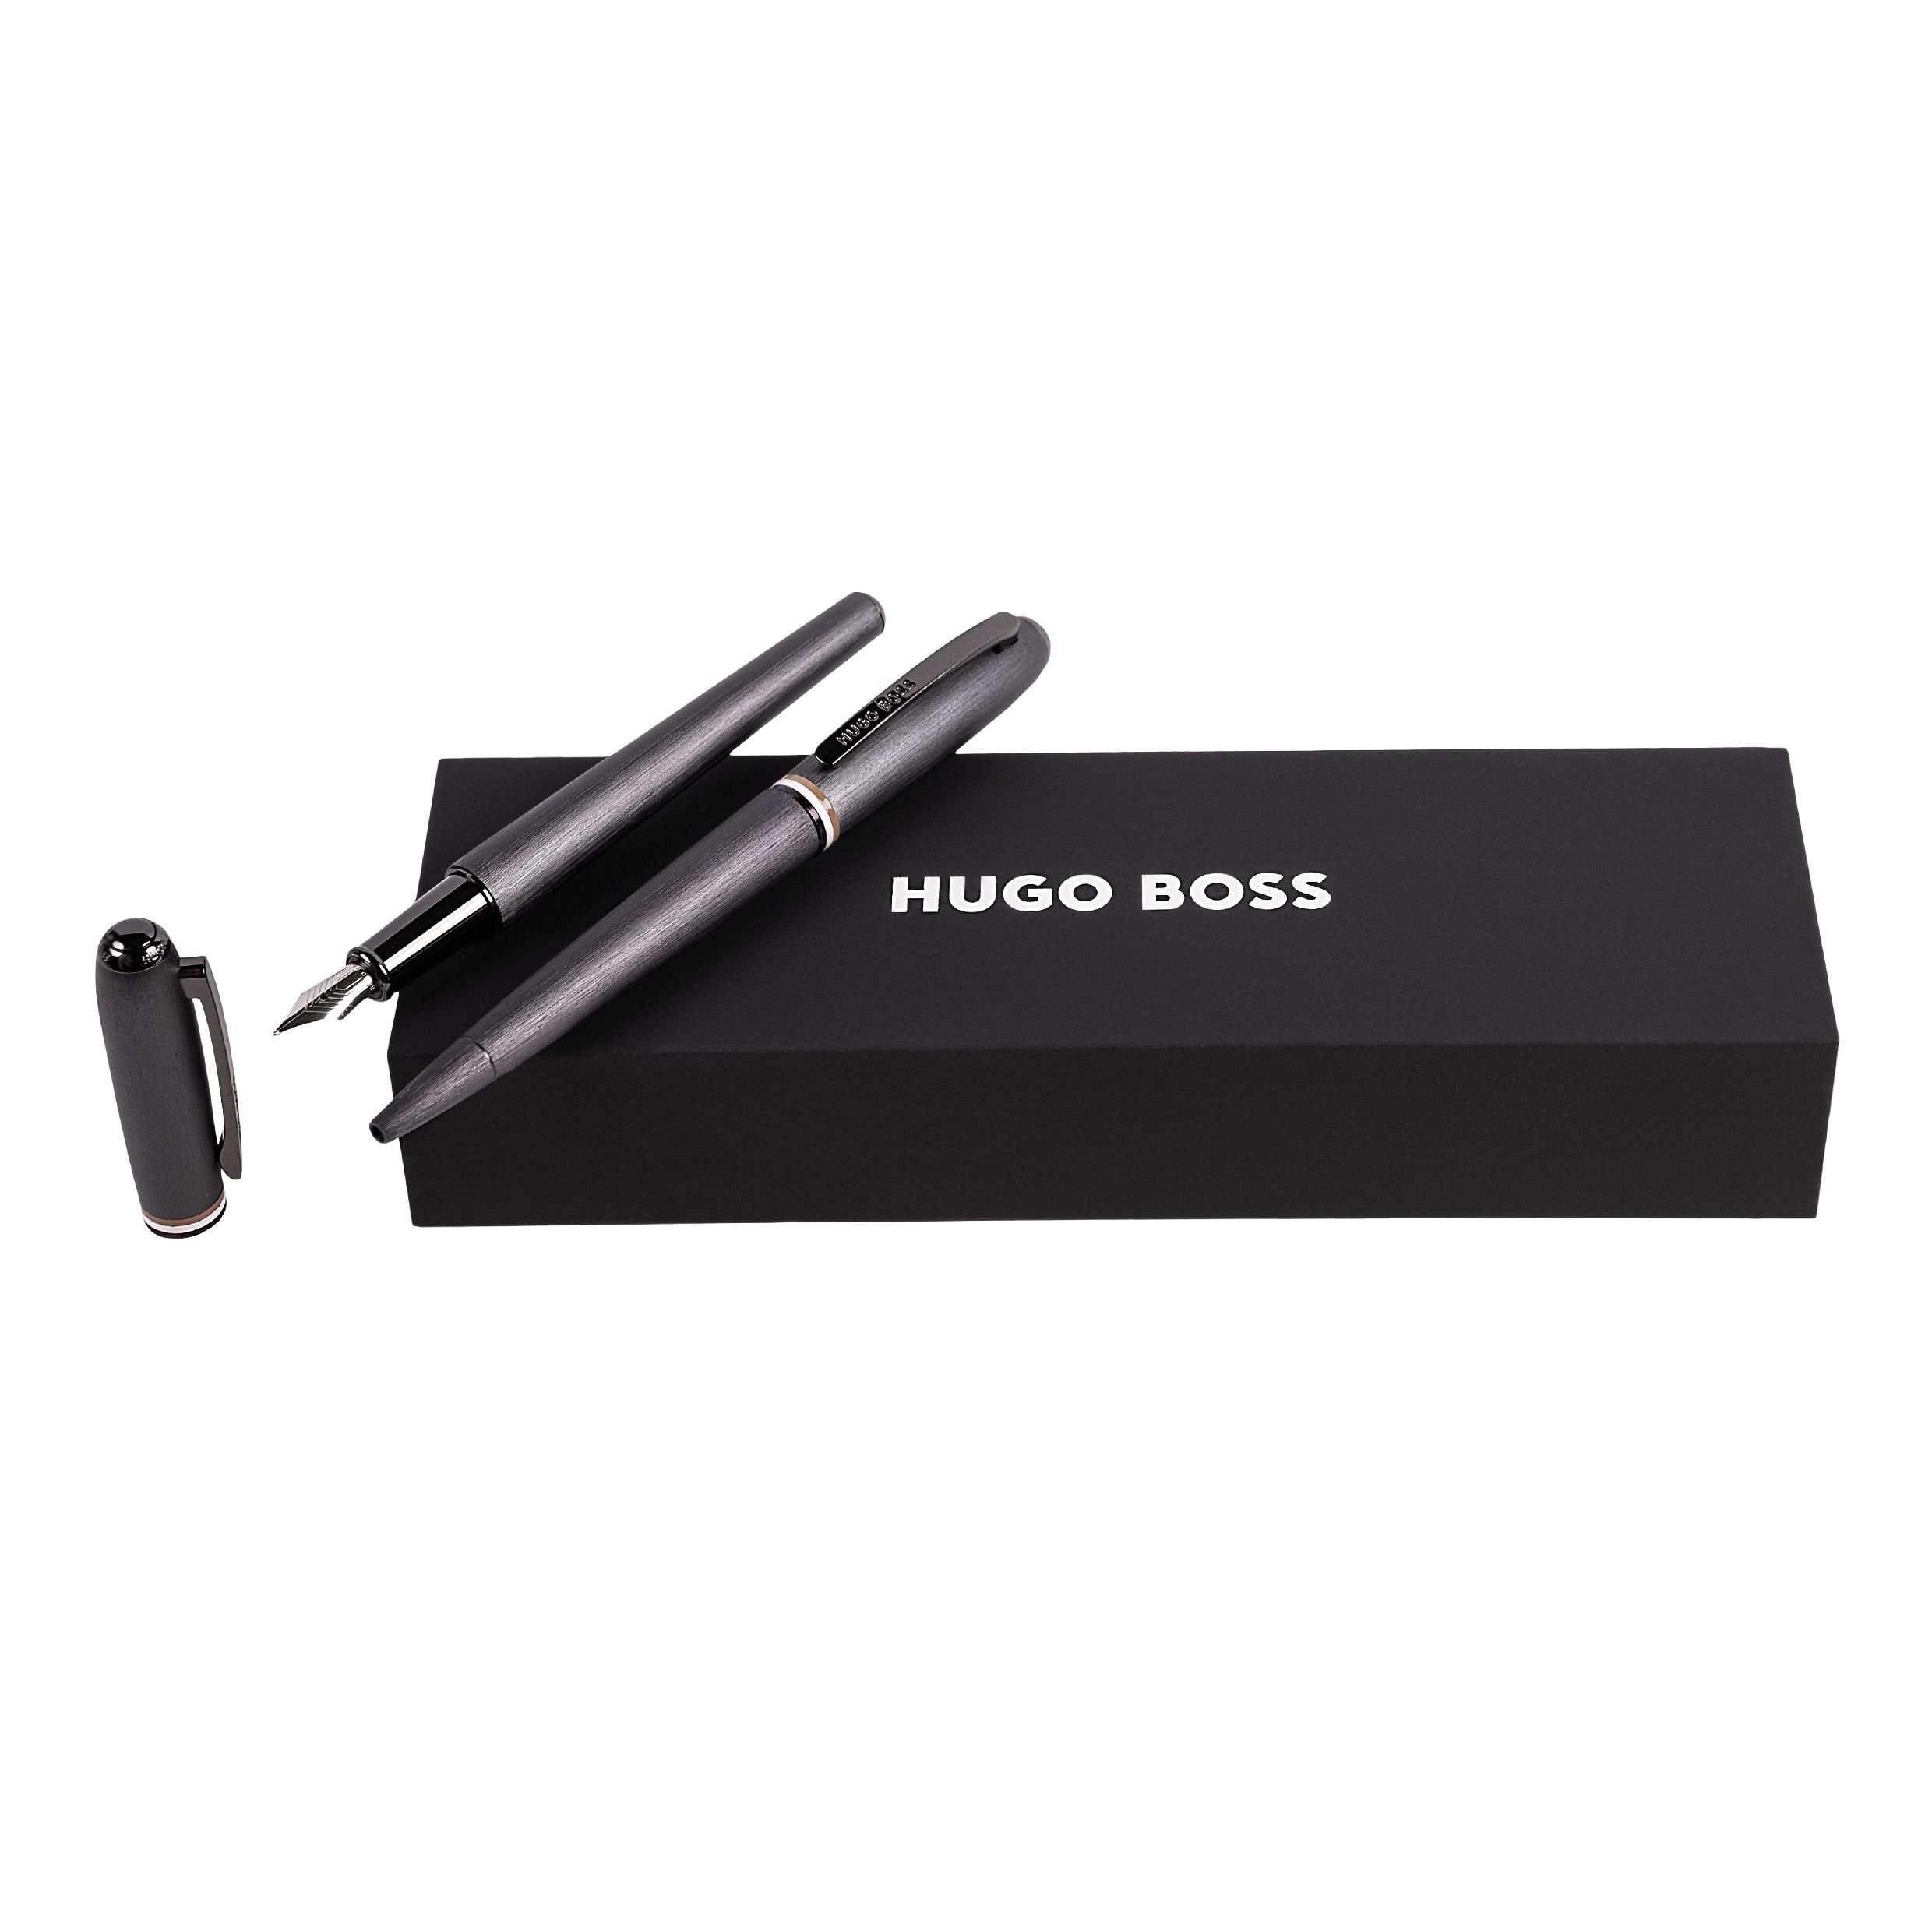 Zestaw upominkowy HUGO BOSS długopis i pióro wieczne - HSH3412D + HSH3414D